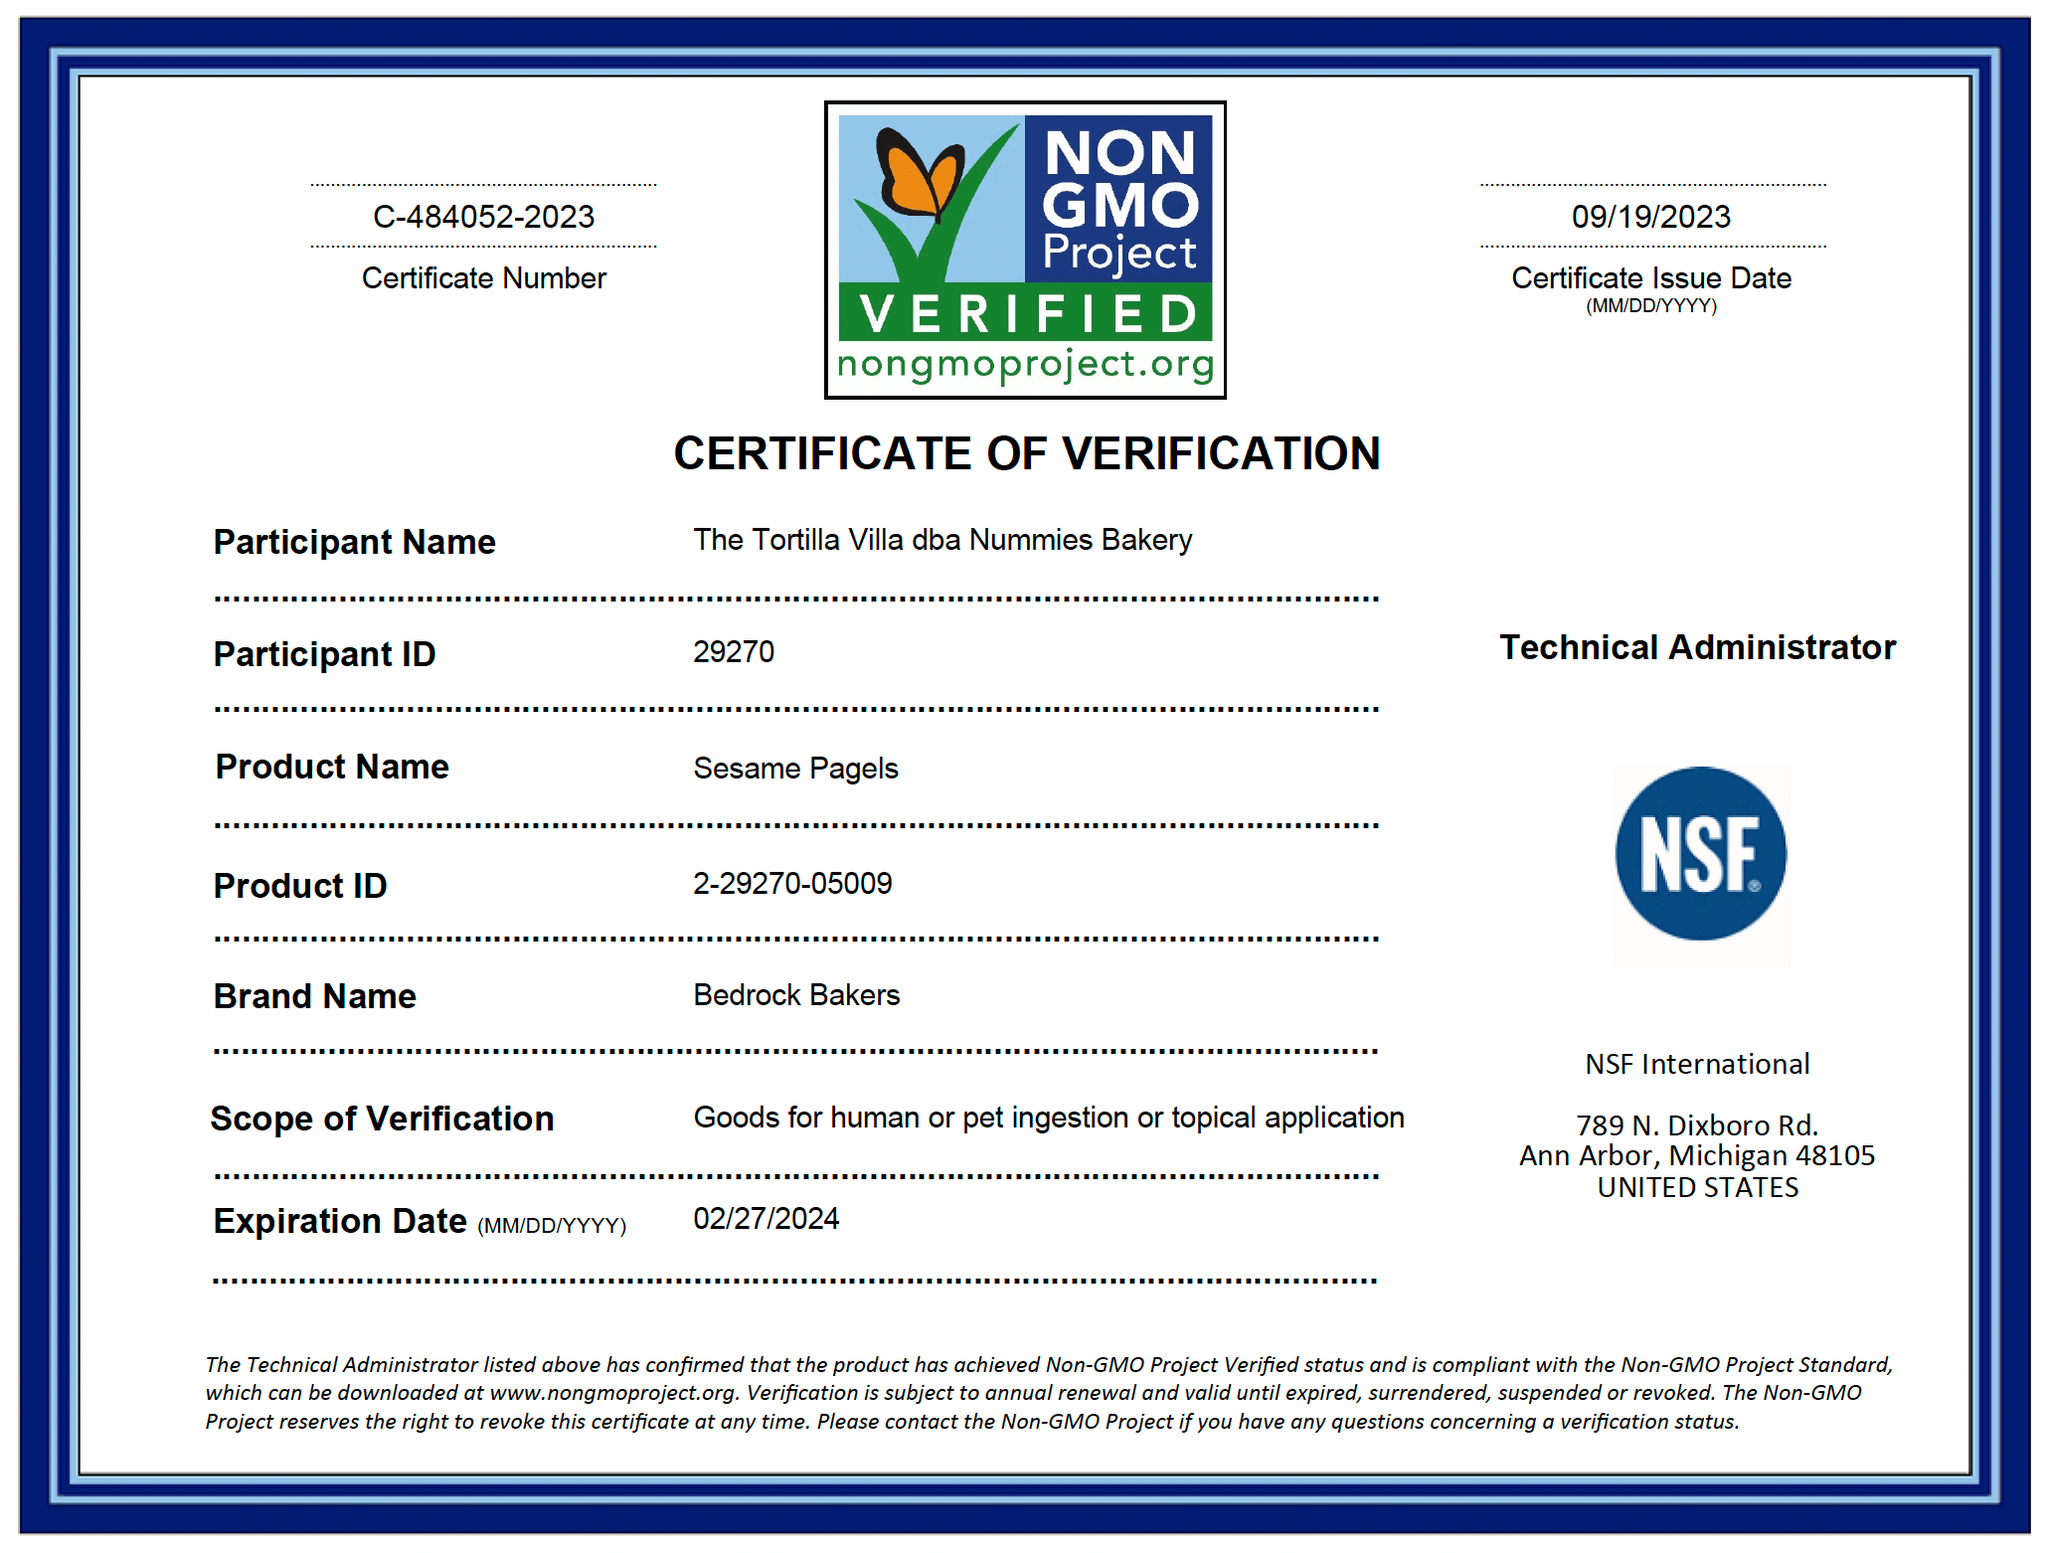 Non GMO Certification